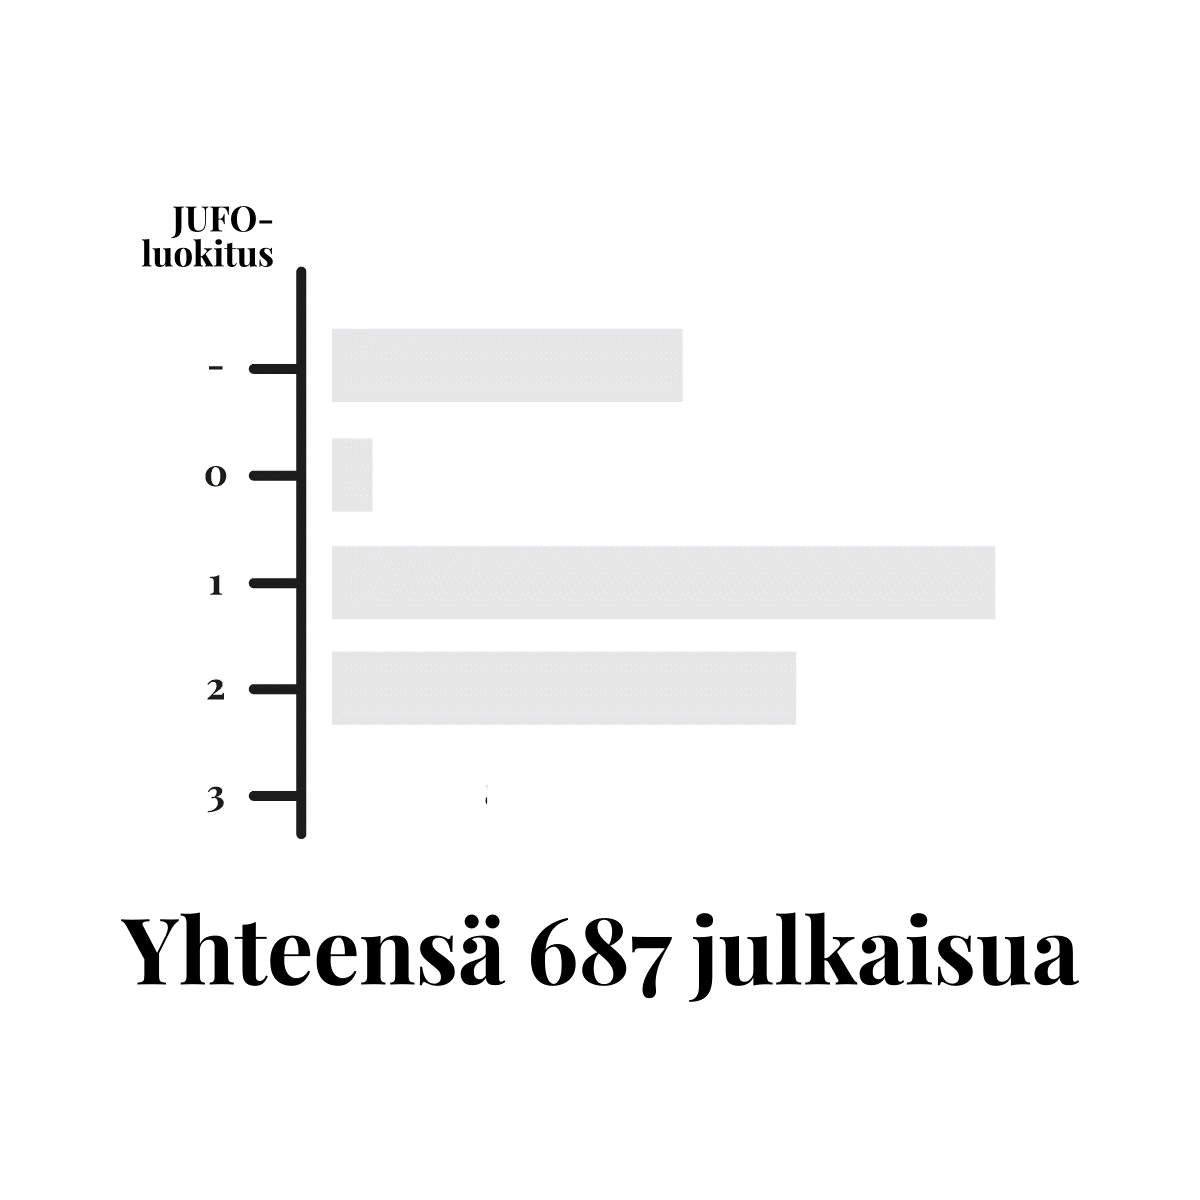 Vaasan yliopiston JUFO-julkaisut 